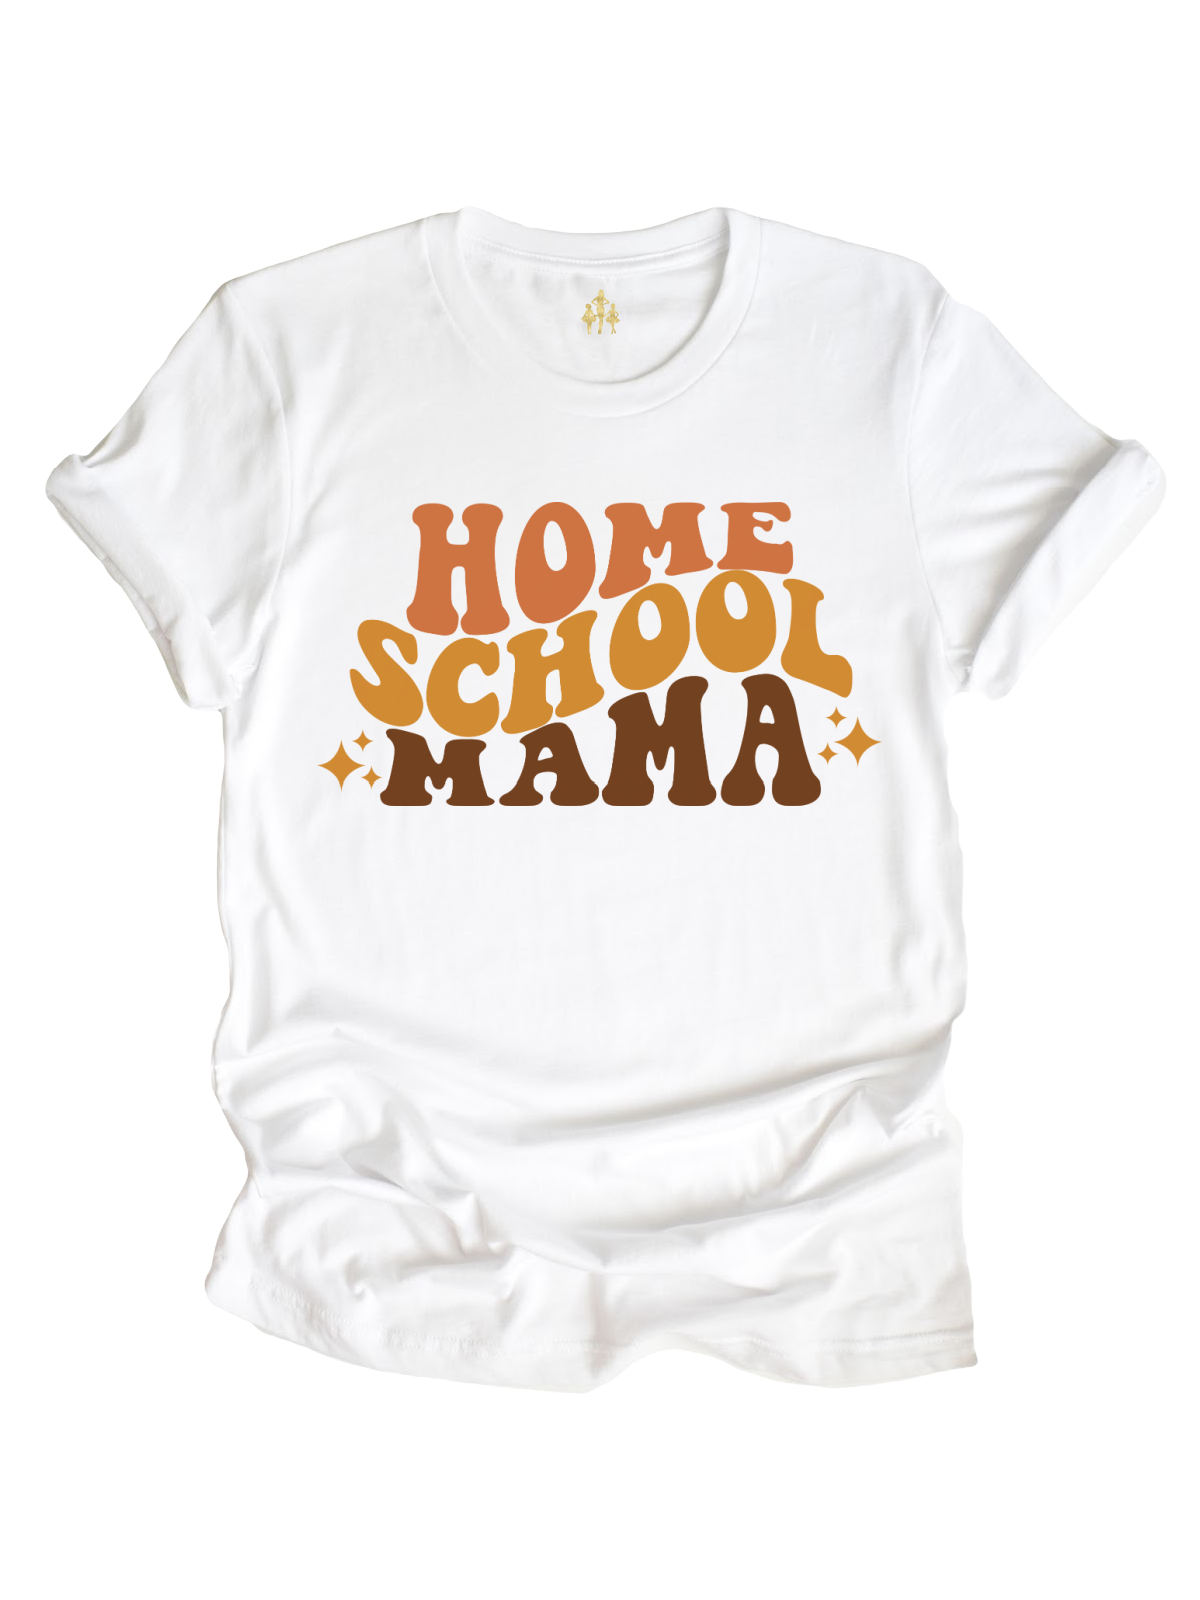 Homeschool Mama Shirt in White